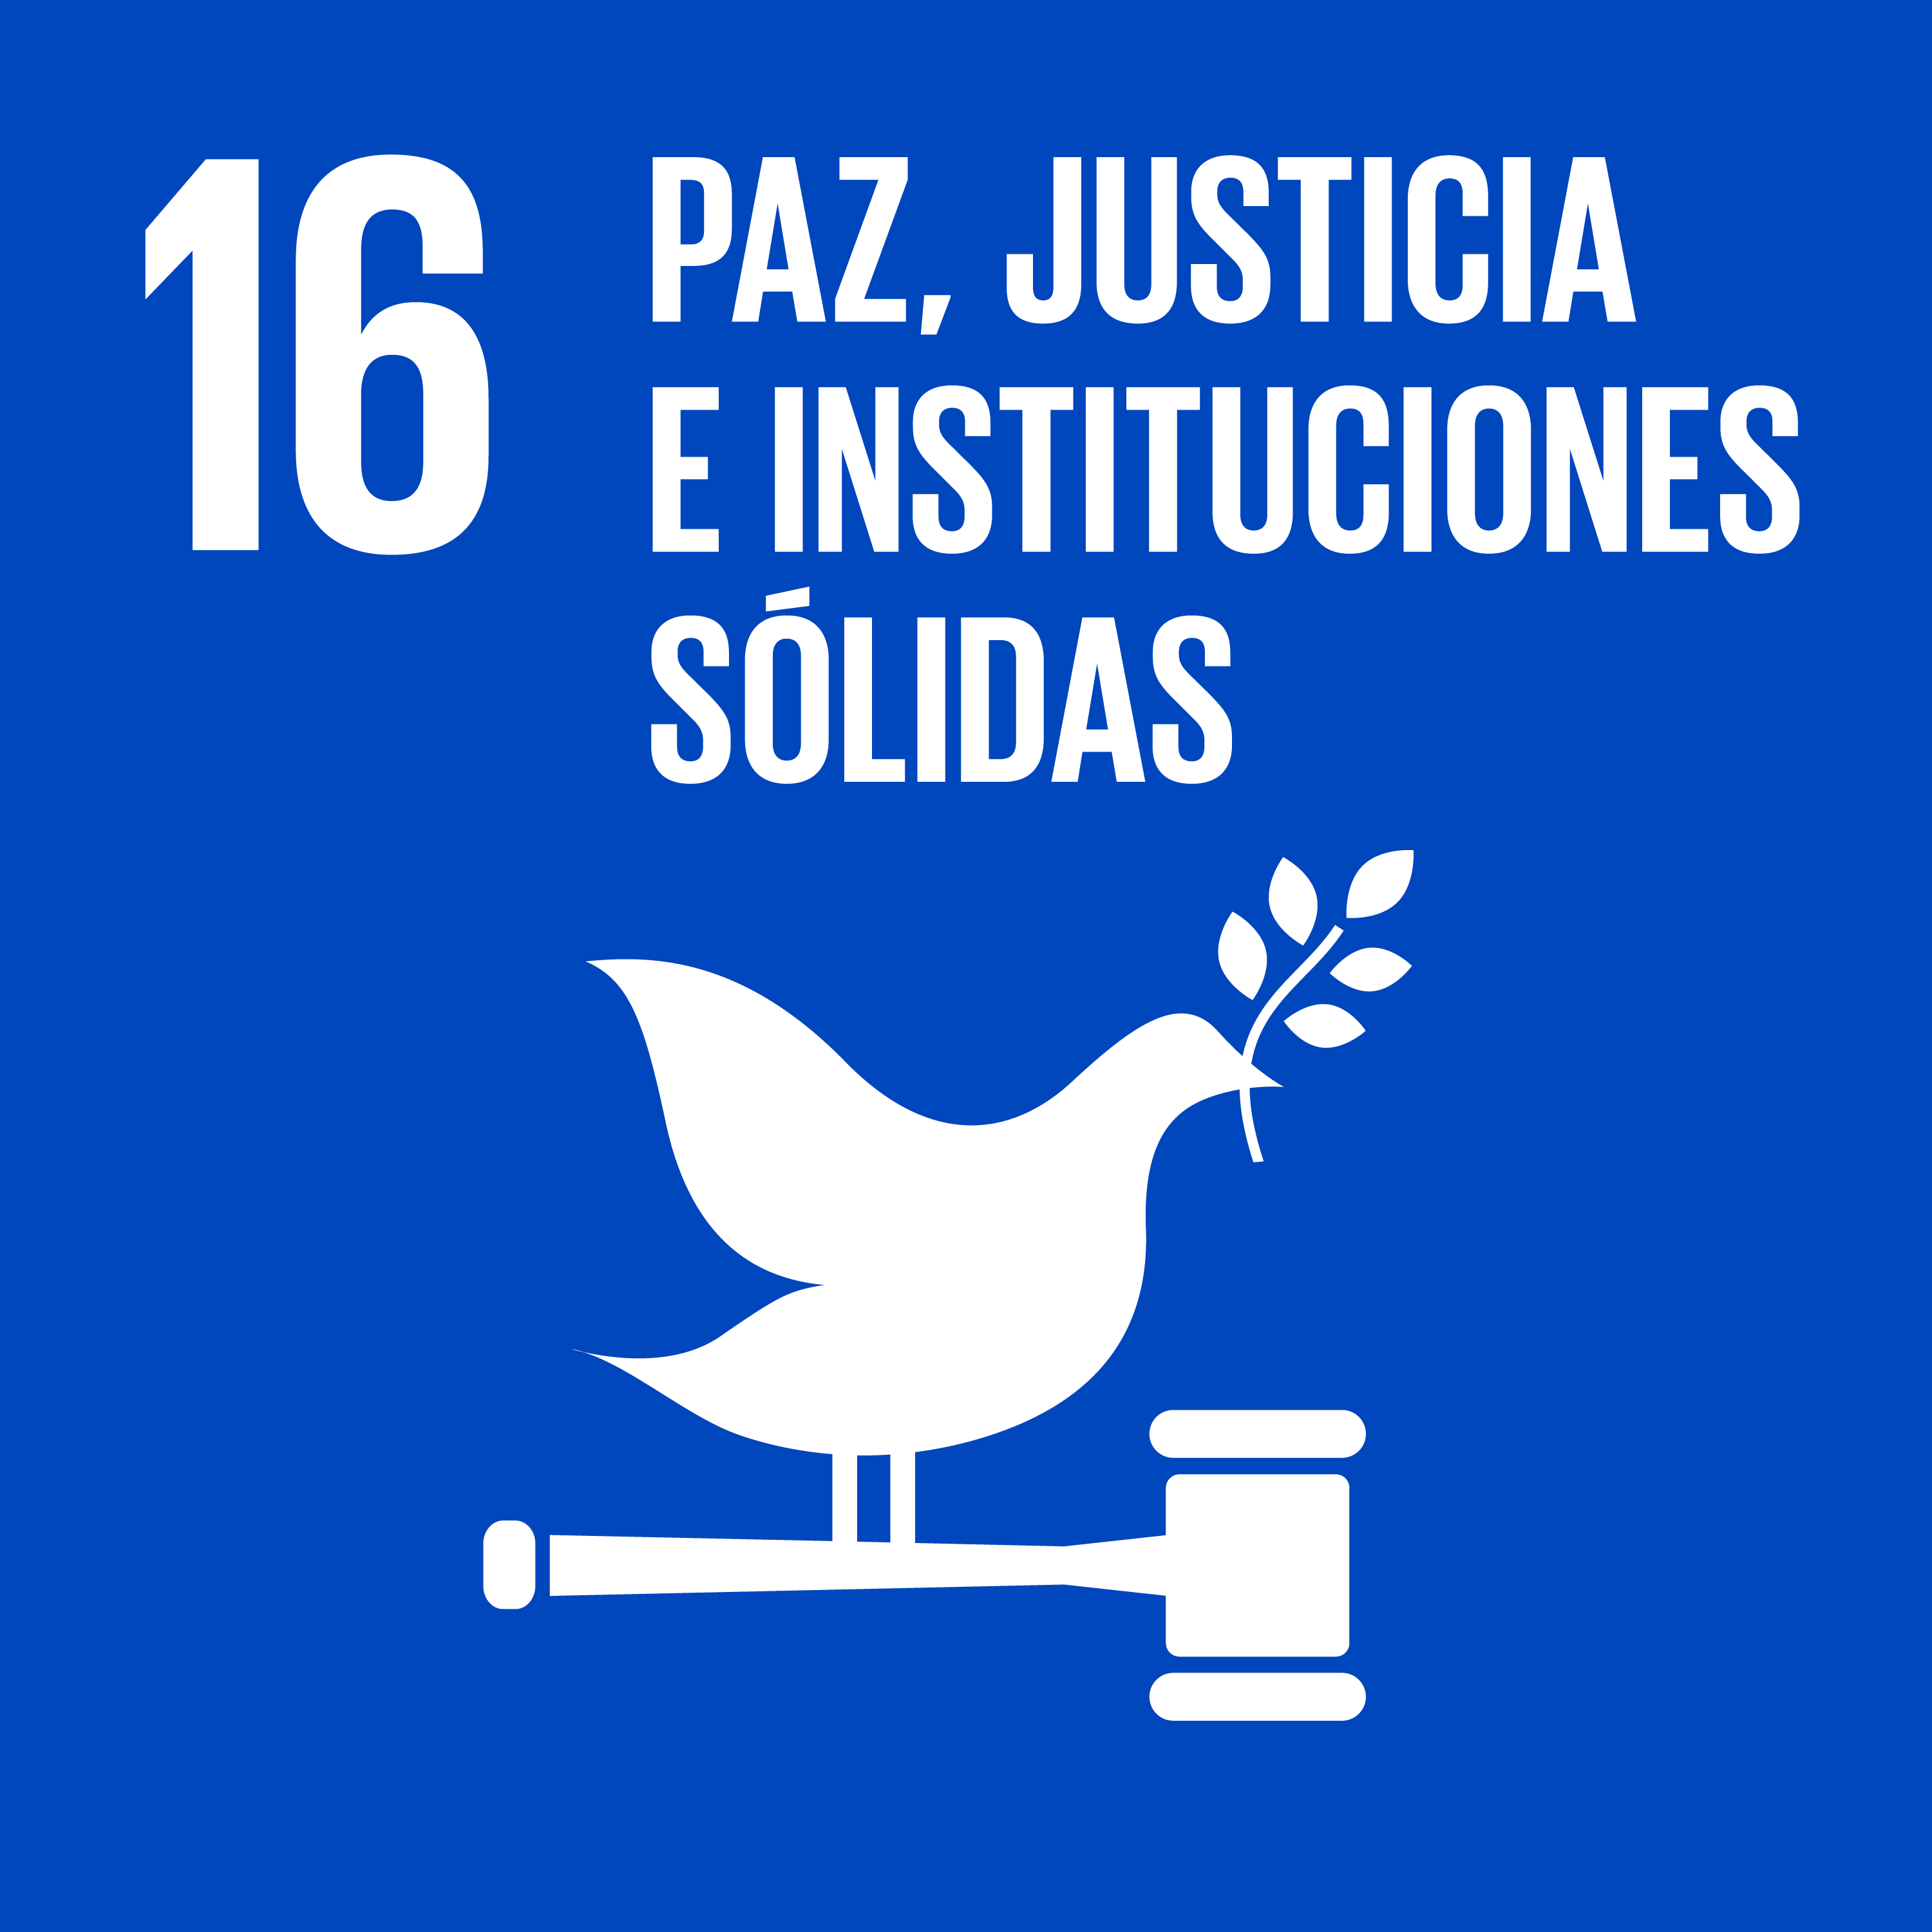 16 Paz, justicia y solidaridad